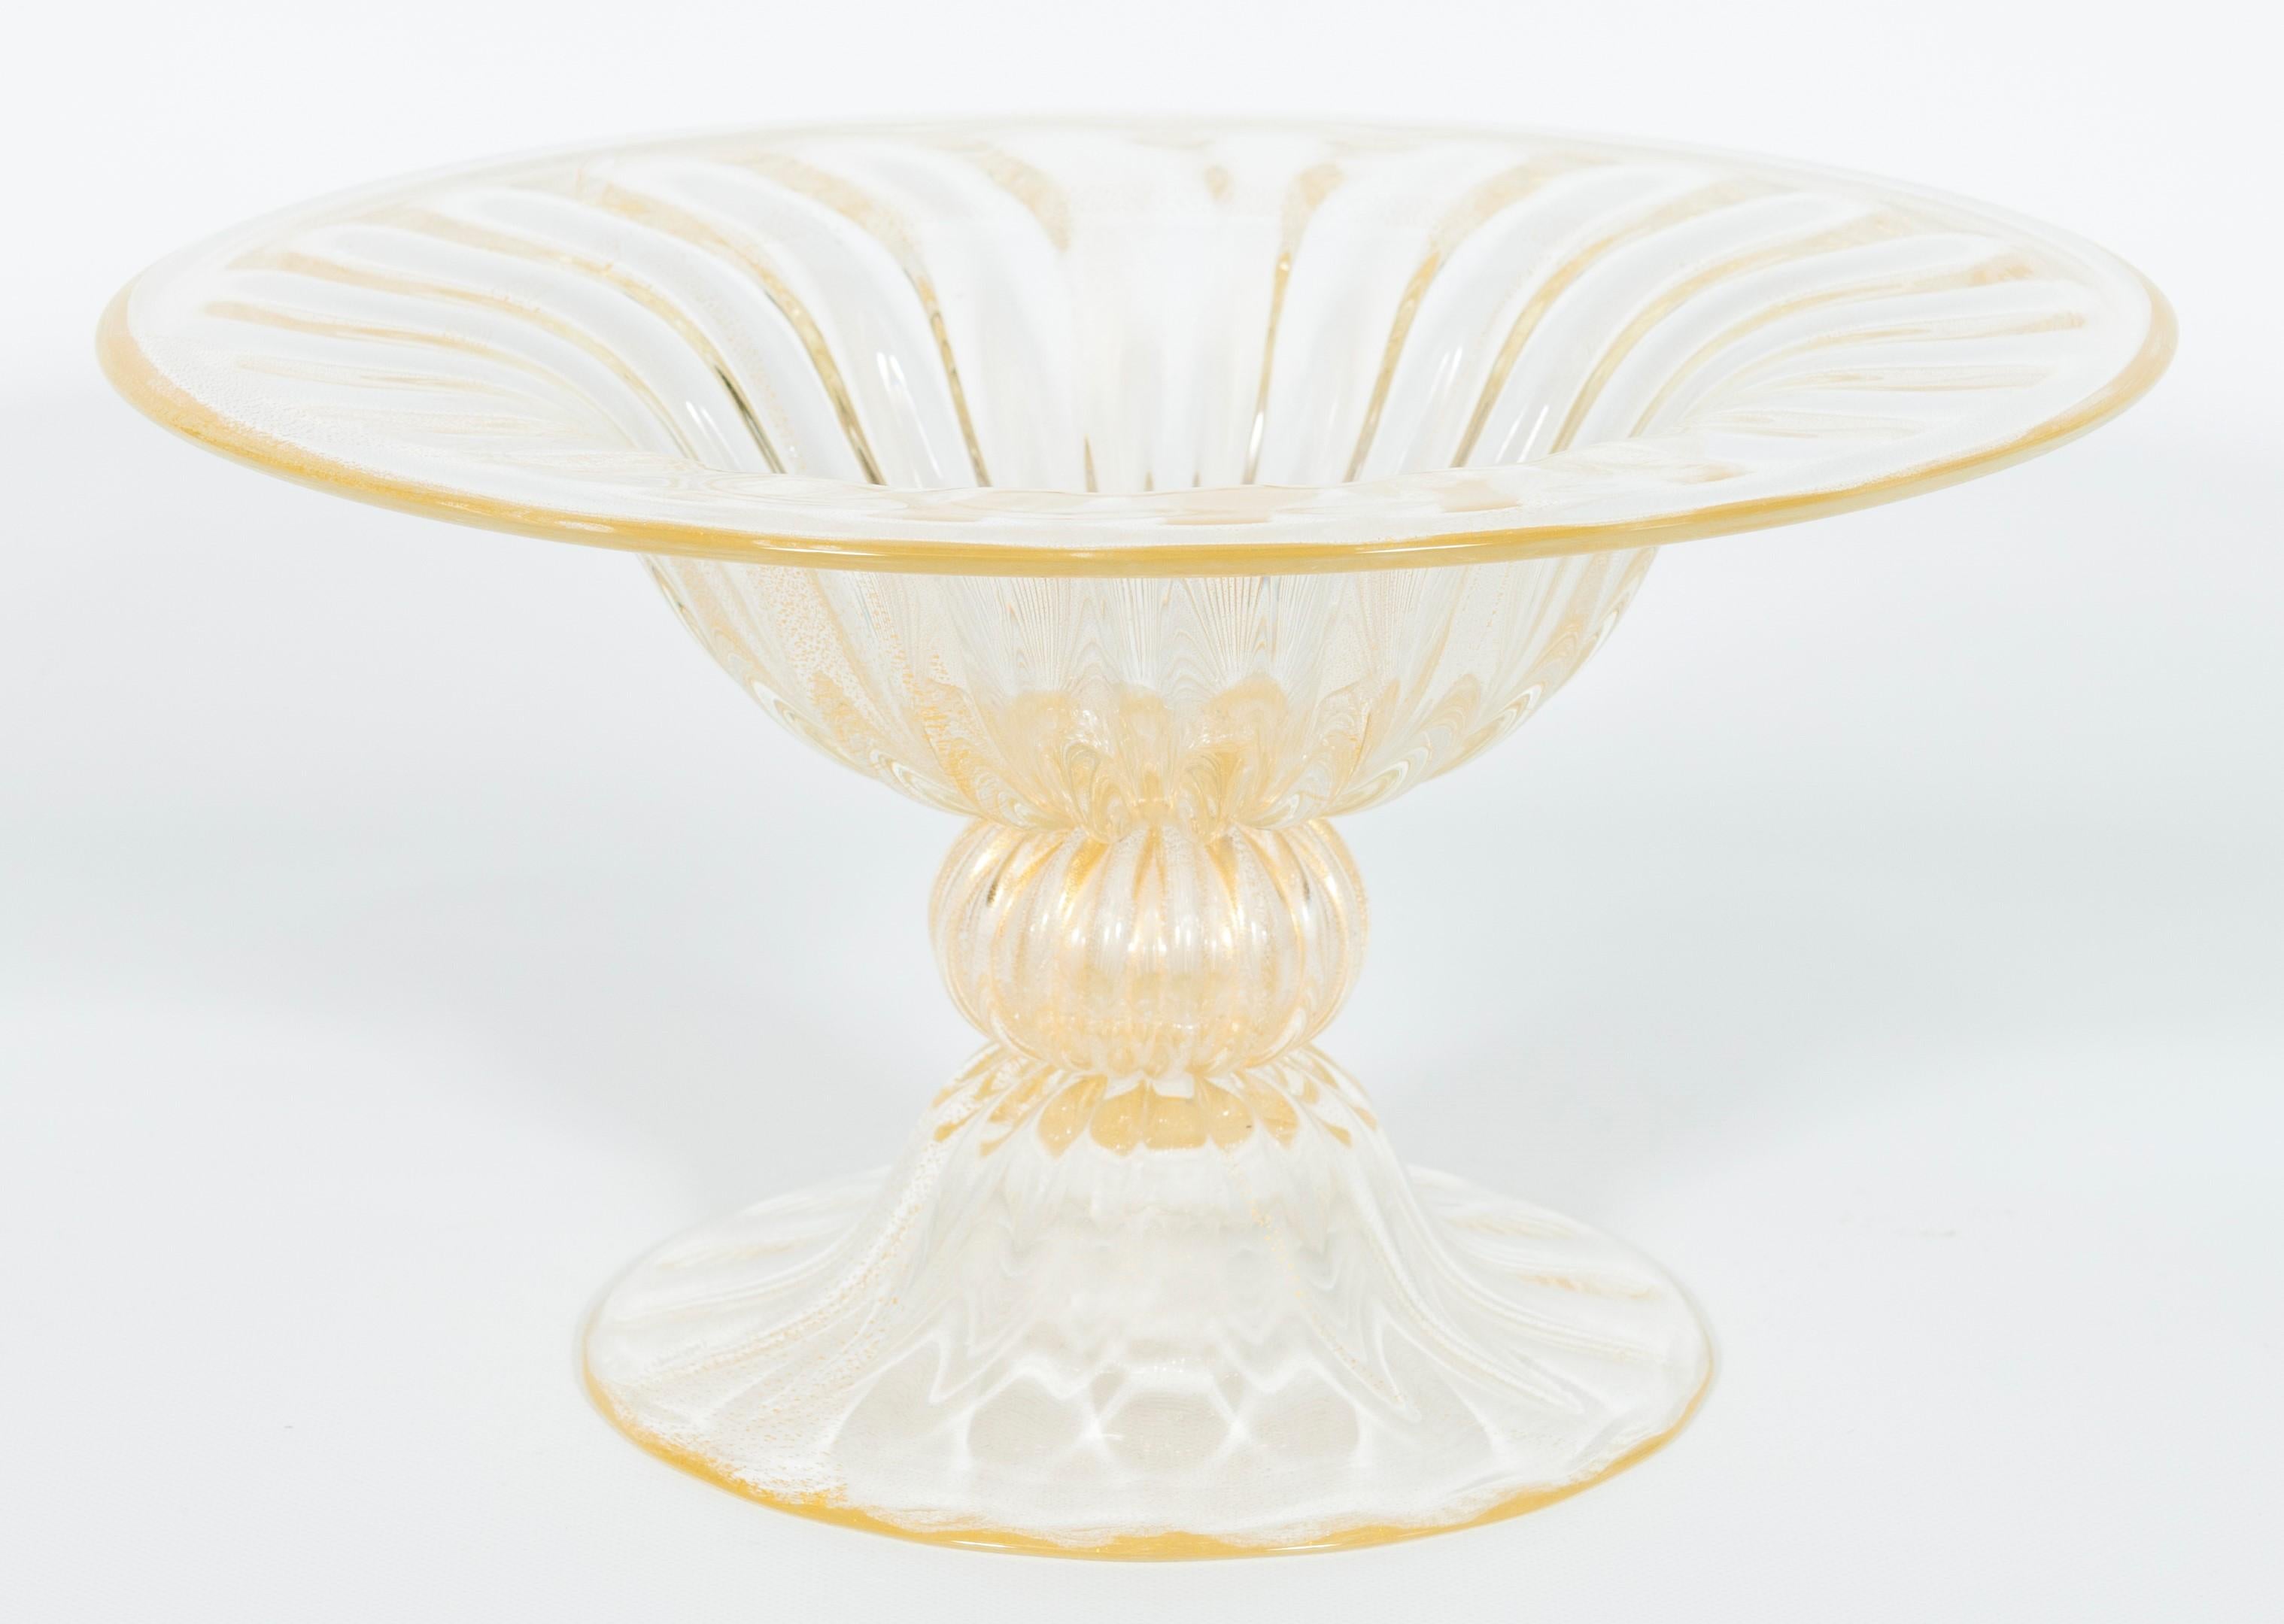 Zeitgenössische dekorative Schale aus italienischem Muranoglas mit 24 Karat Gold, zugeschrieben Alberto Donà, 2000er Jahre.
Der Sockel trägt eine zentrale Kugel und die Schale an der Spitze. Dieses Kunstwerk ist aus transparentem mundgeblasenem